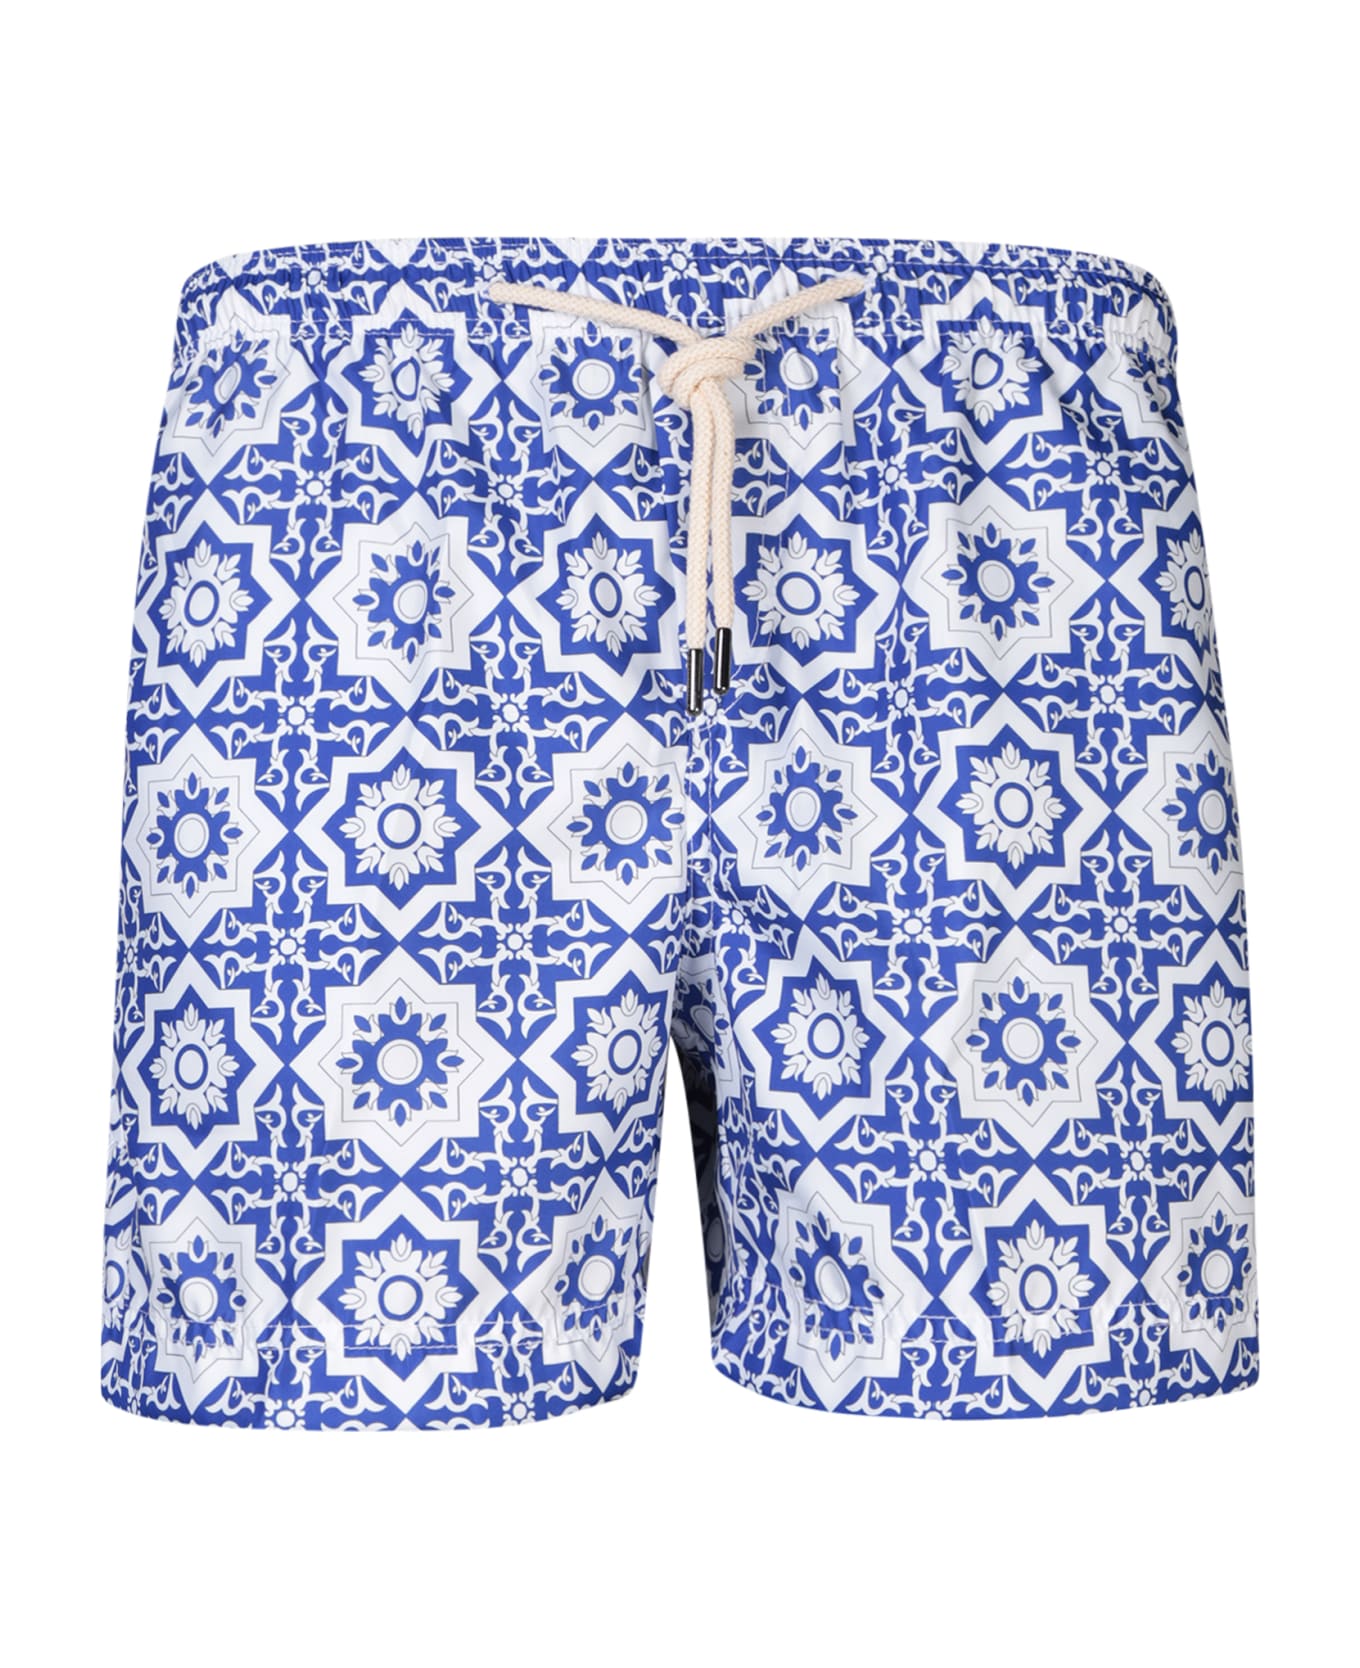 Peninsula Swimwear Patterned Swim Trunks In White/blue - Blue